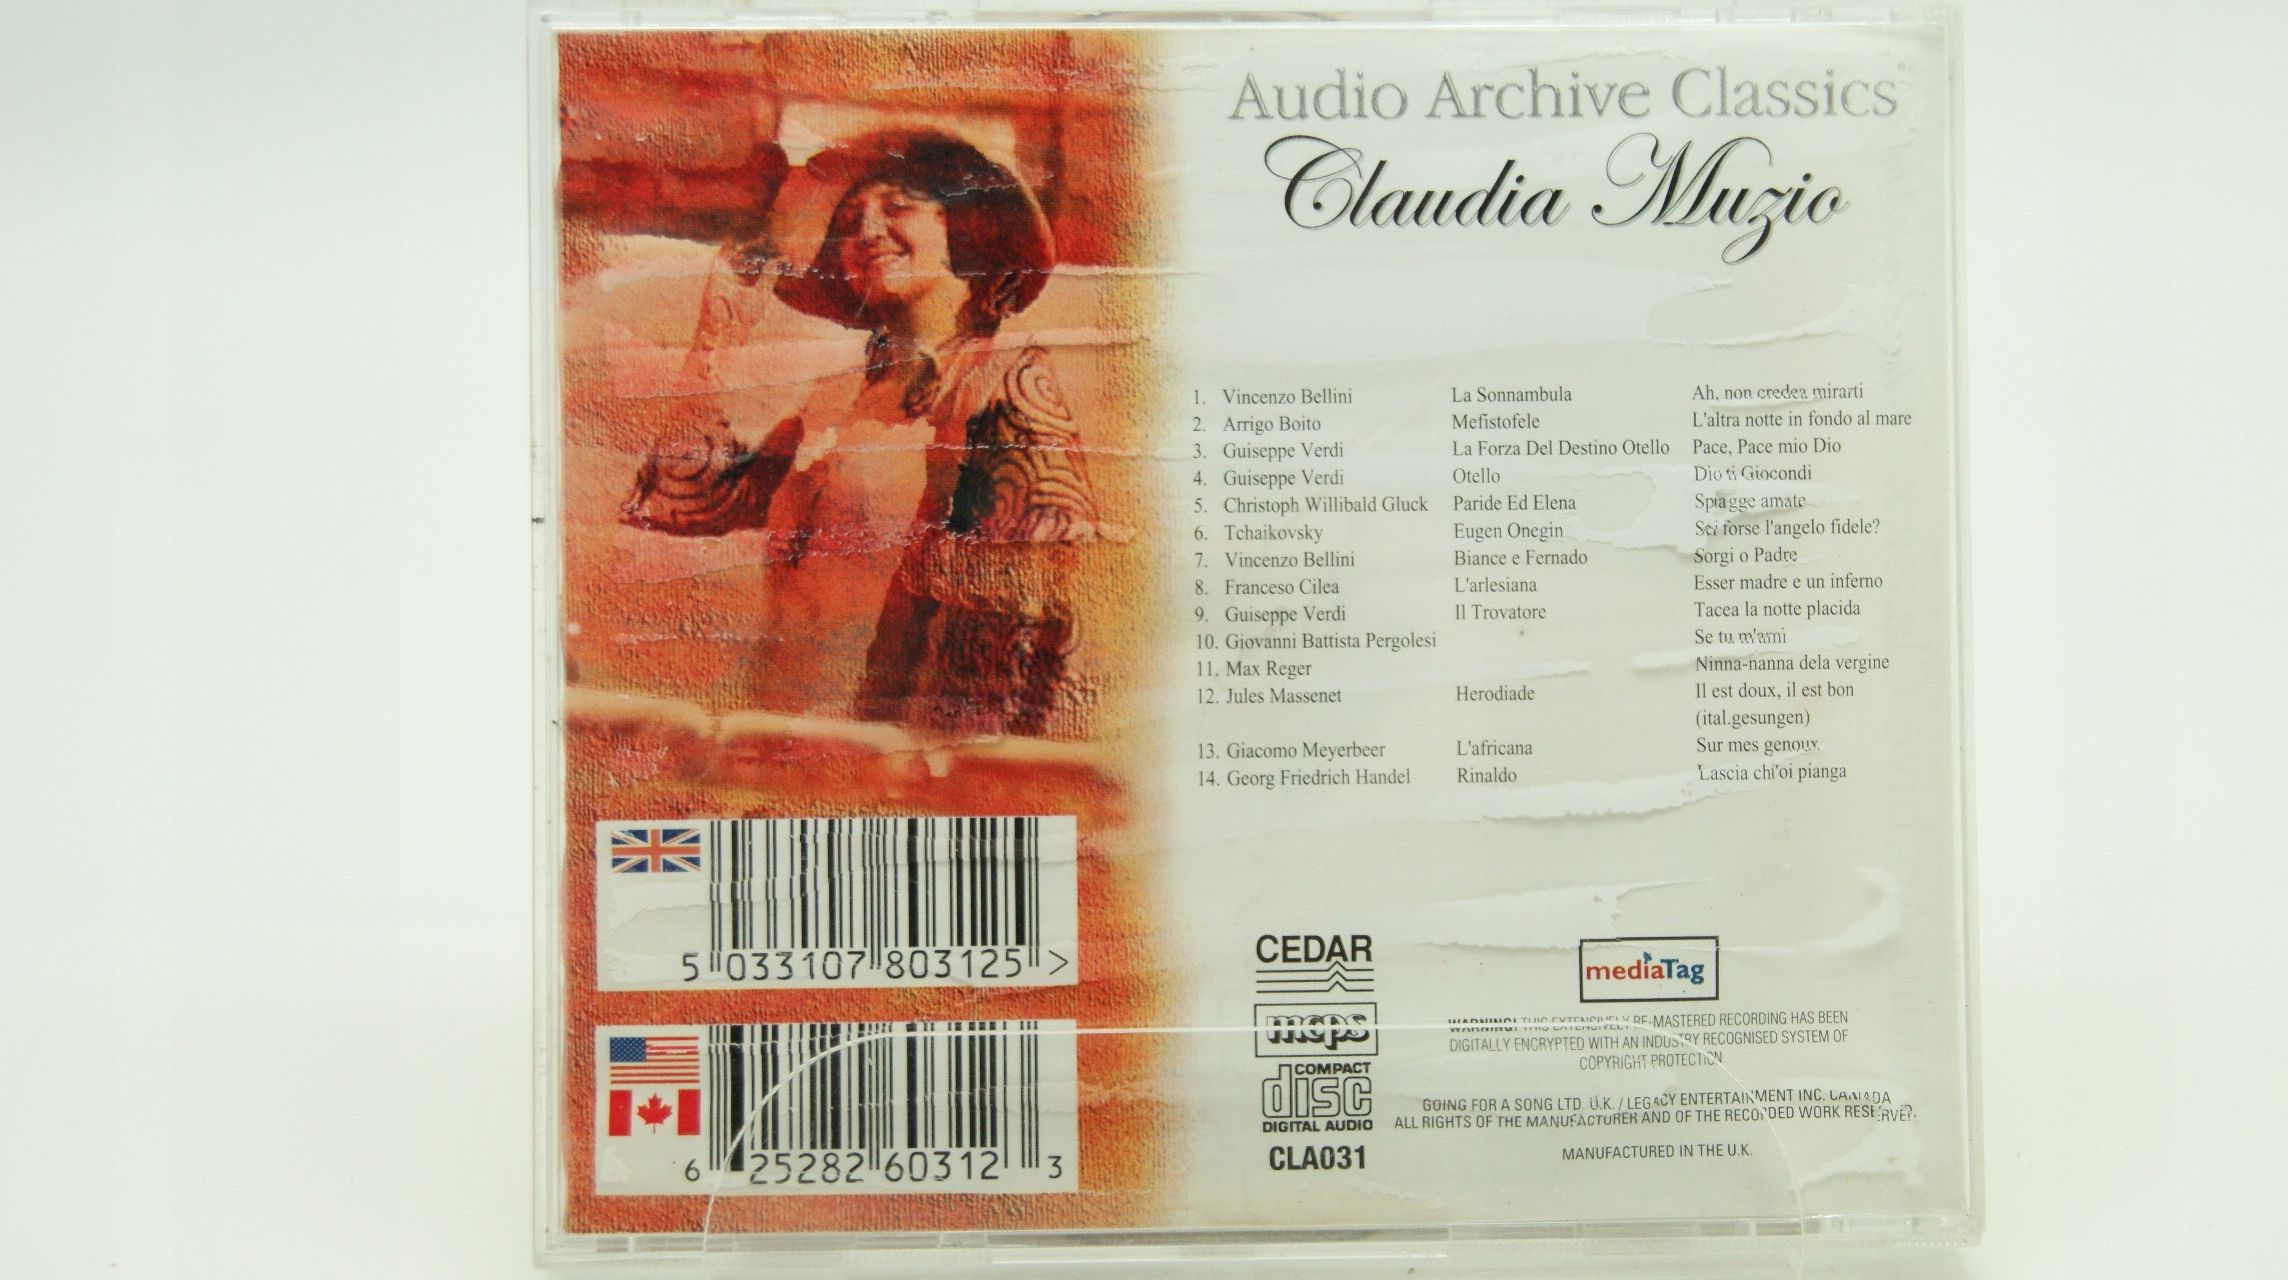 Cd - Audio Archive Classics - Claudia Muzio